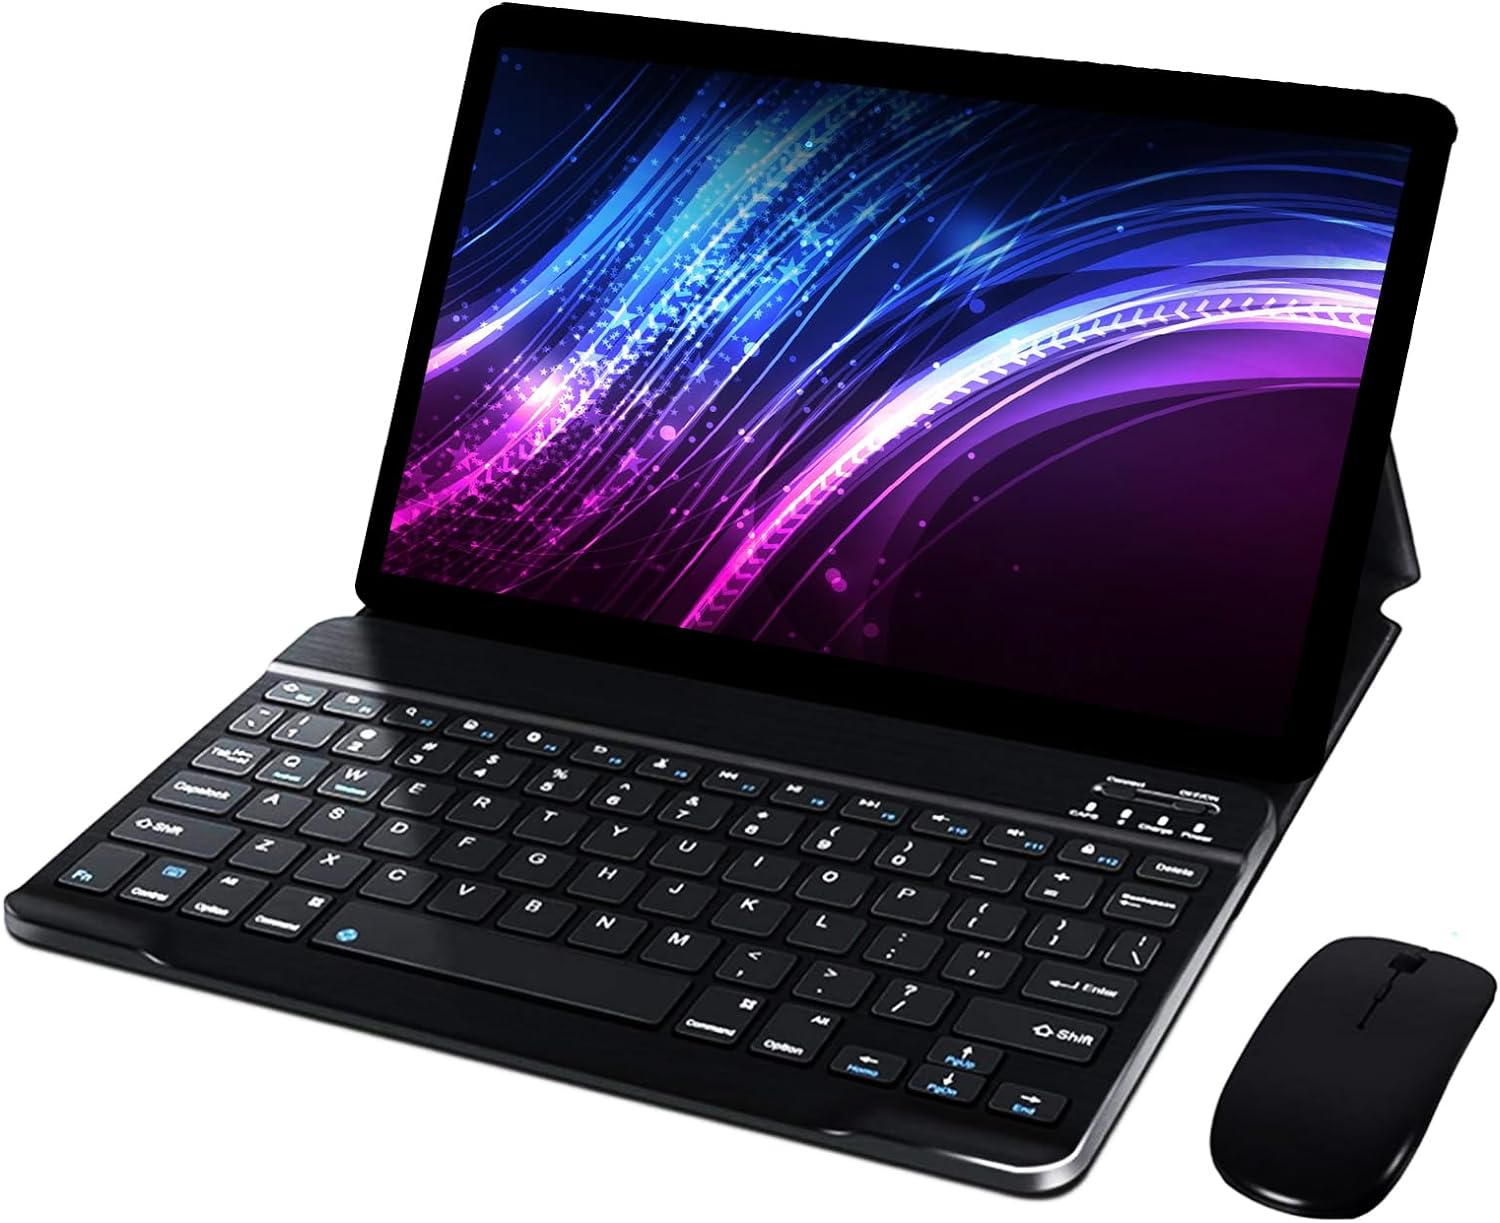 Tastiera Bluetooth, mouse senza fili e custodia: questo tablet ha tutto ma  costa solo 69€ - Webnews